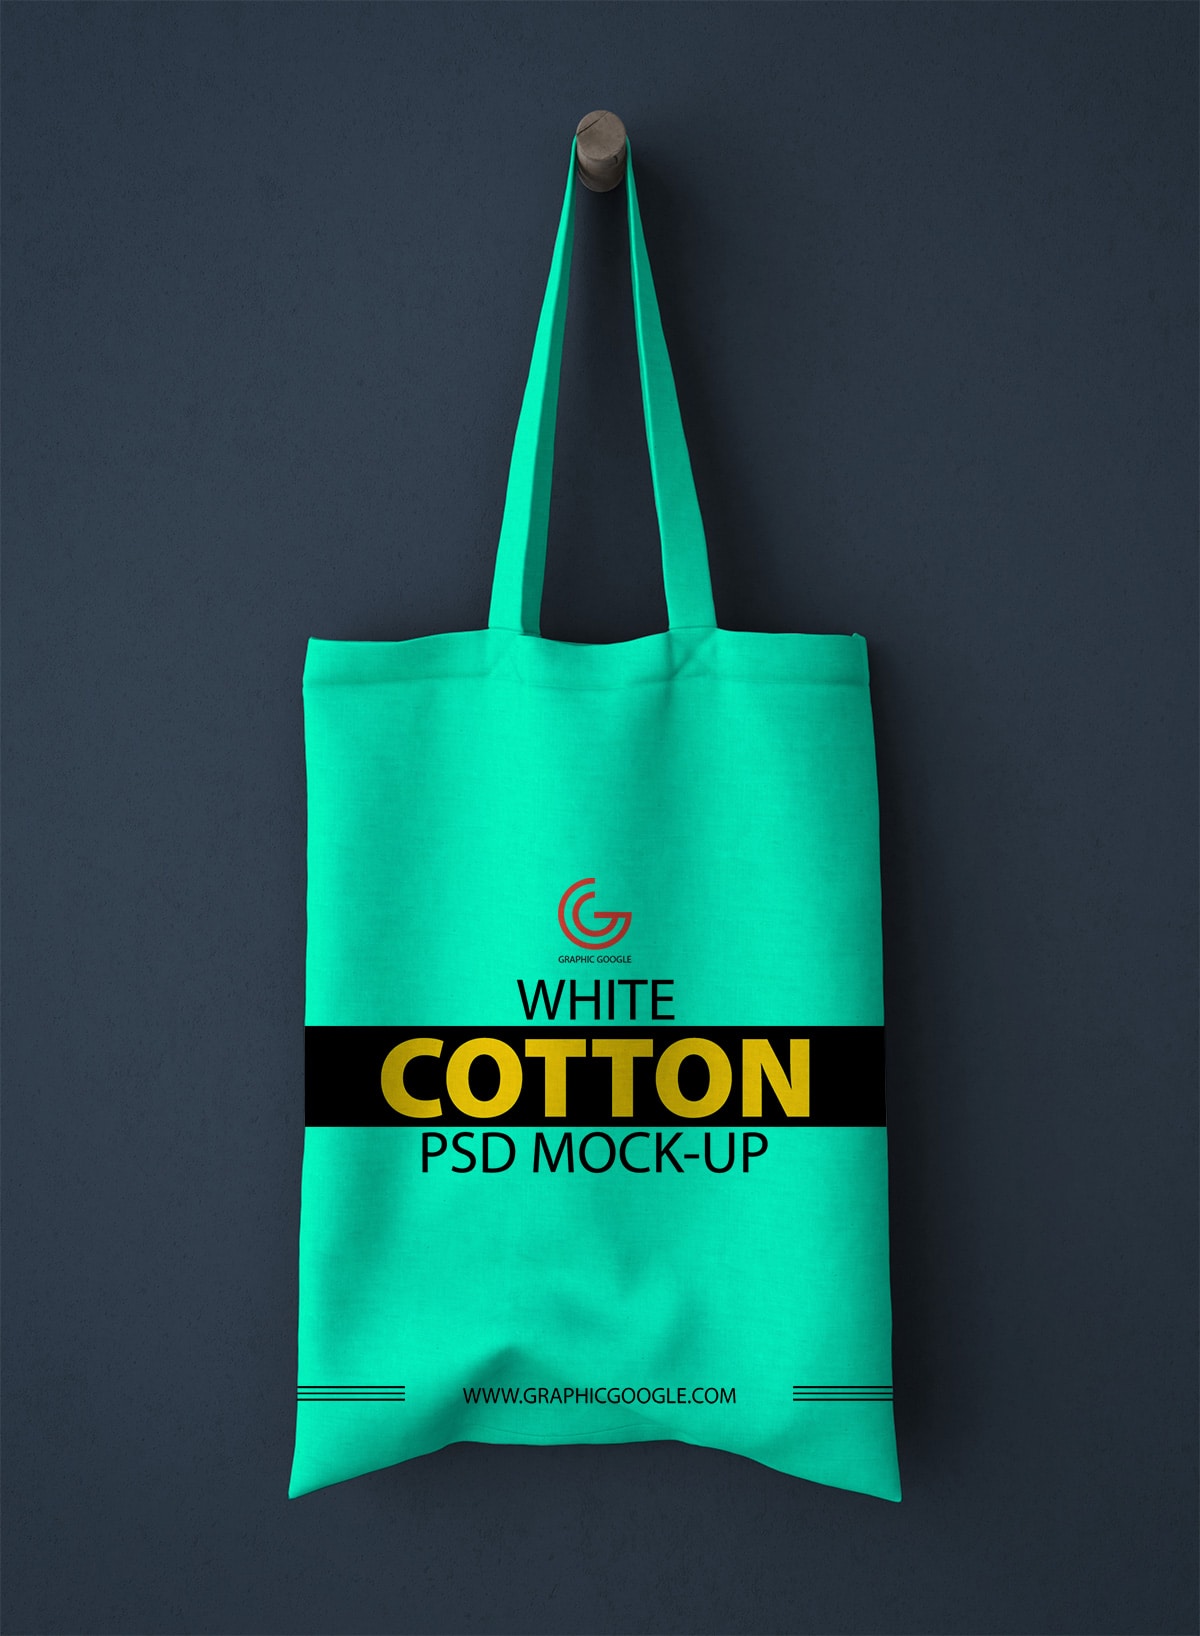 Cotton Bag PSD Mockup Download For Free - DesignHooks